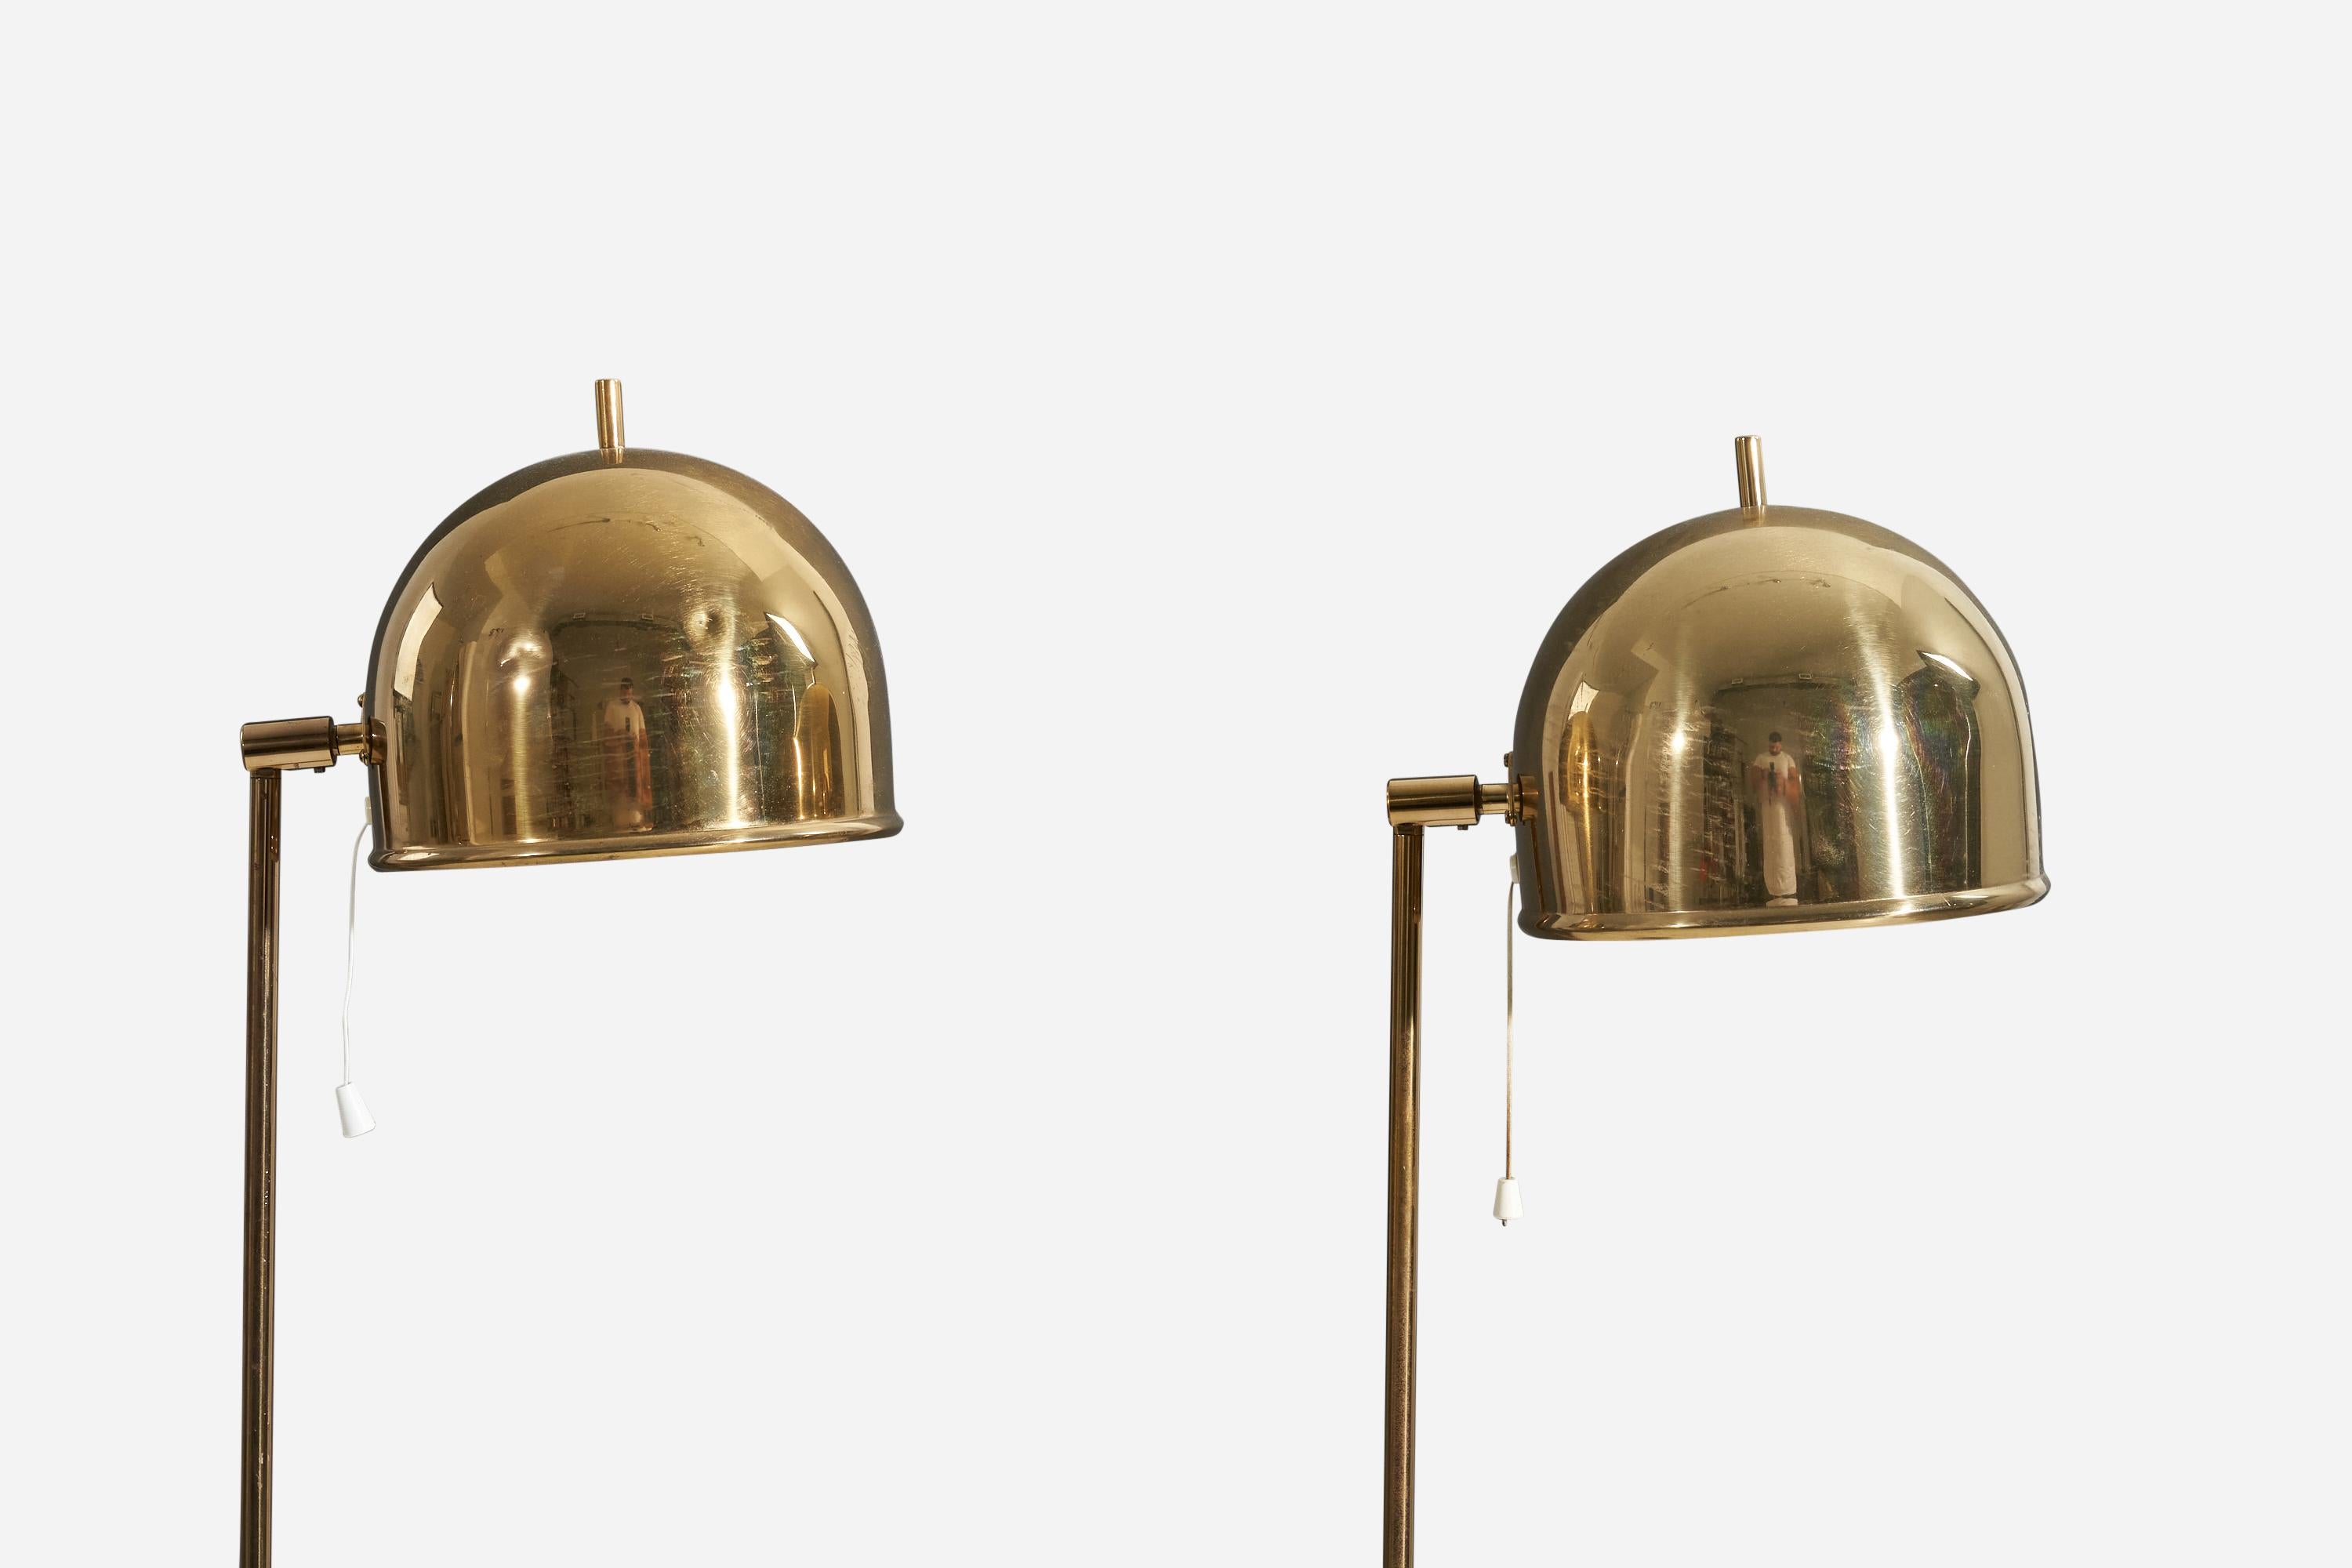 Swedish Eje Ahlgren, Adjustable Floor Lamps, Brass, Bergboms, Sweden, 1960s For Sale